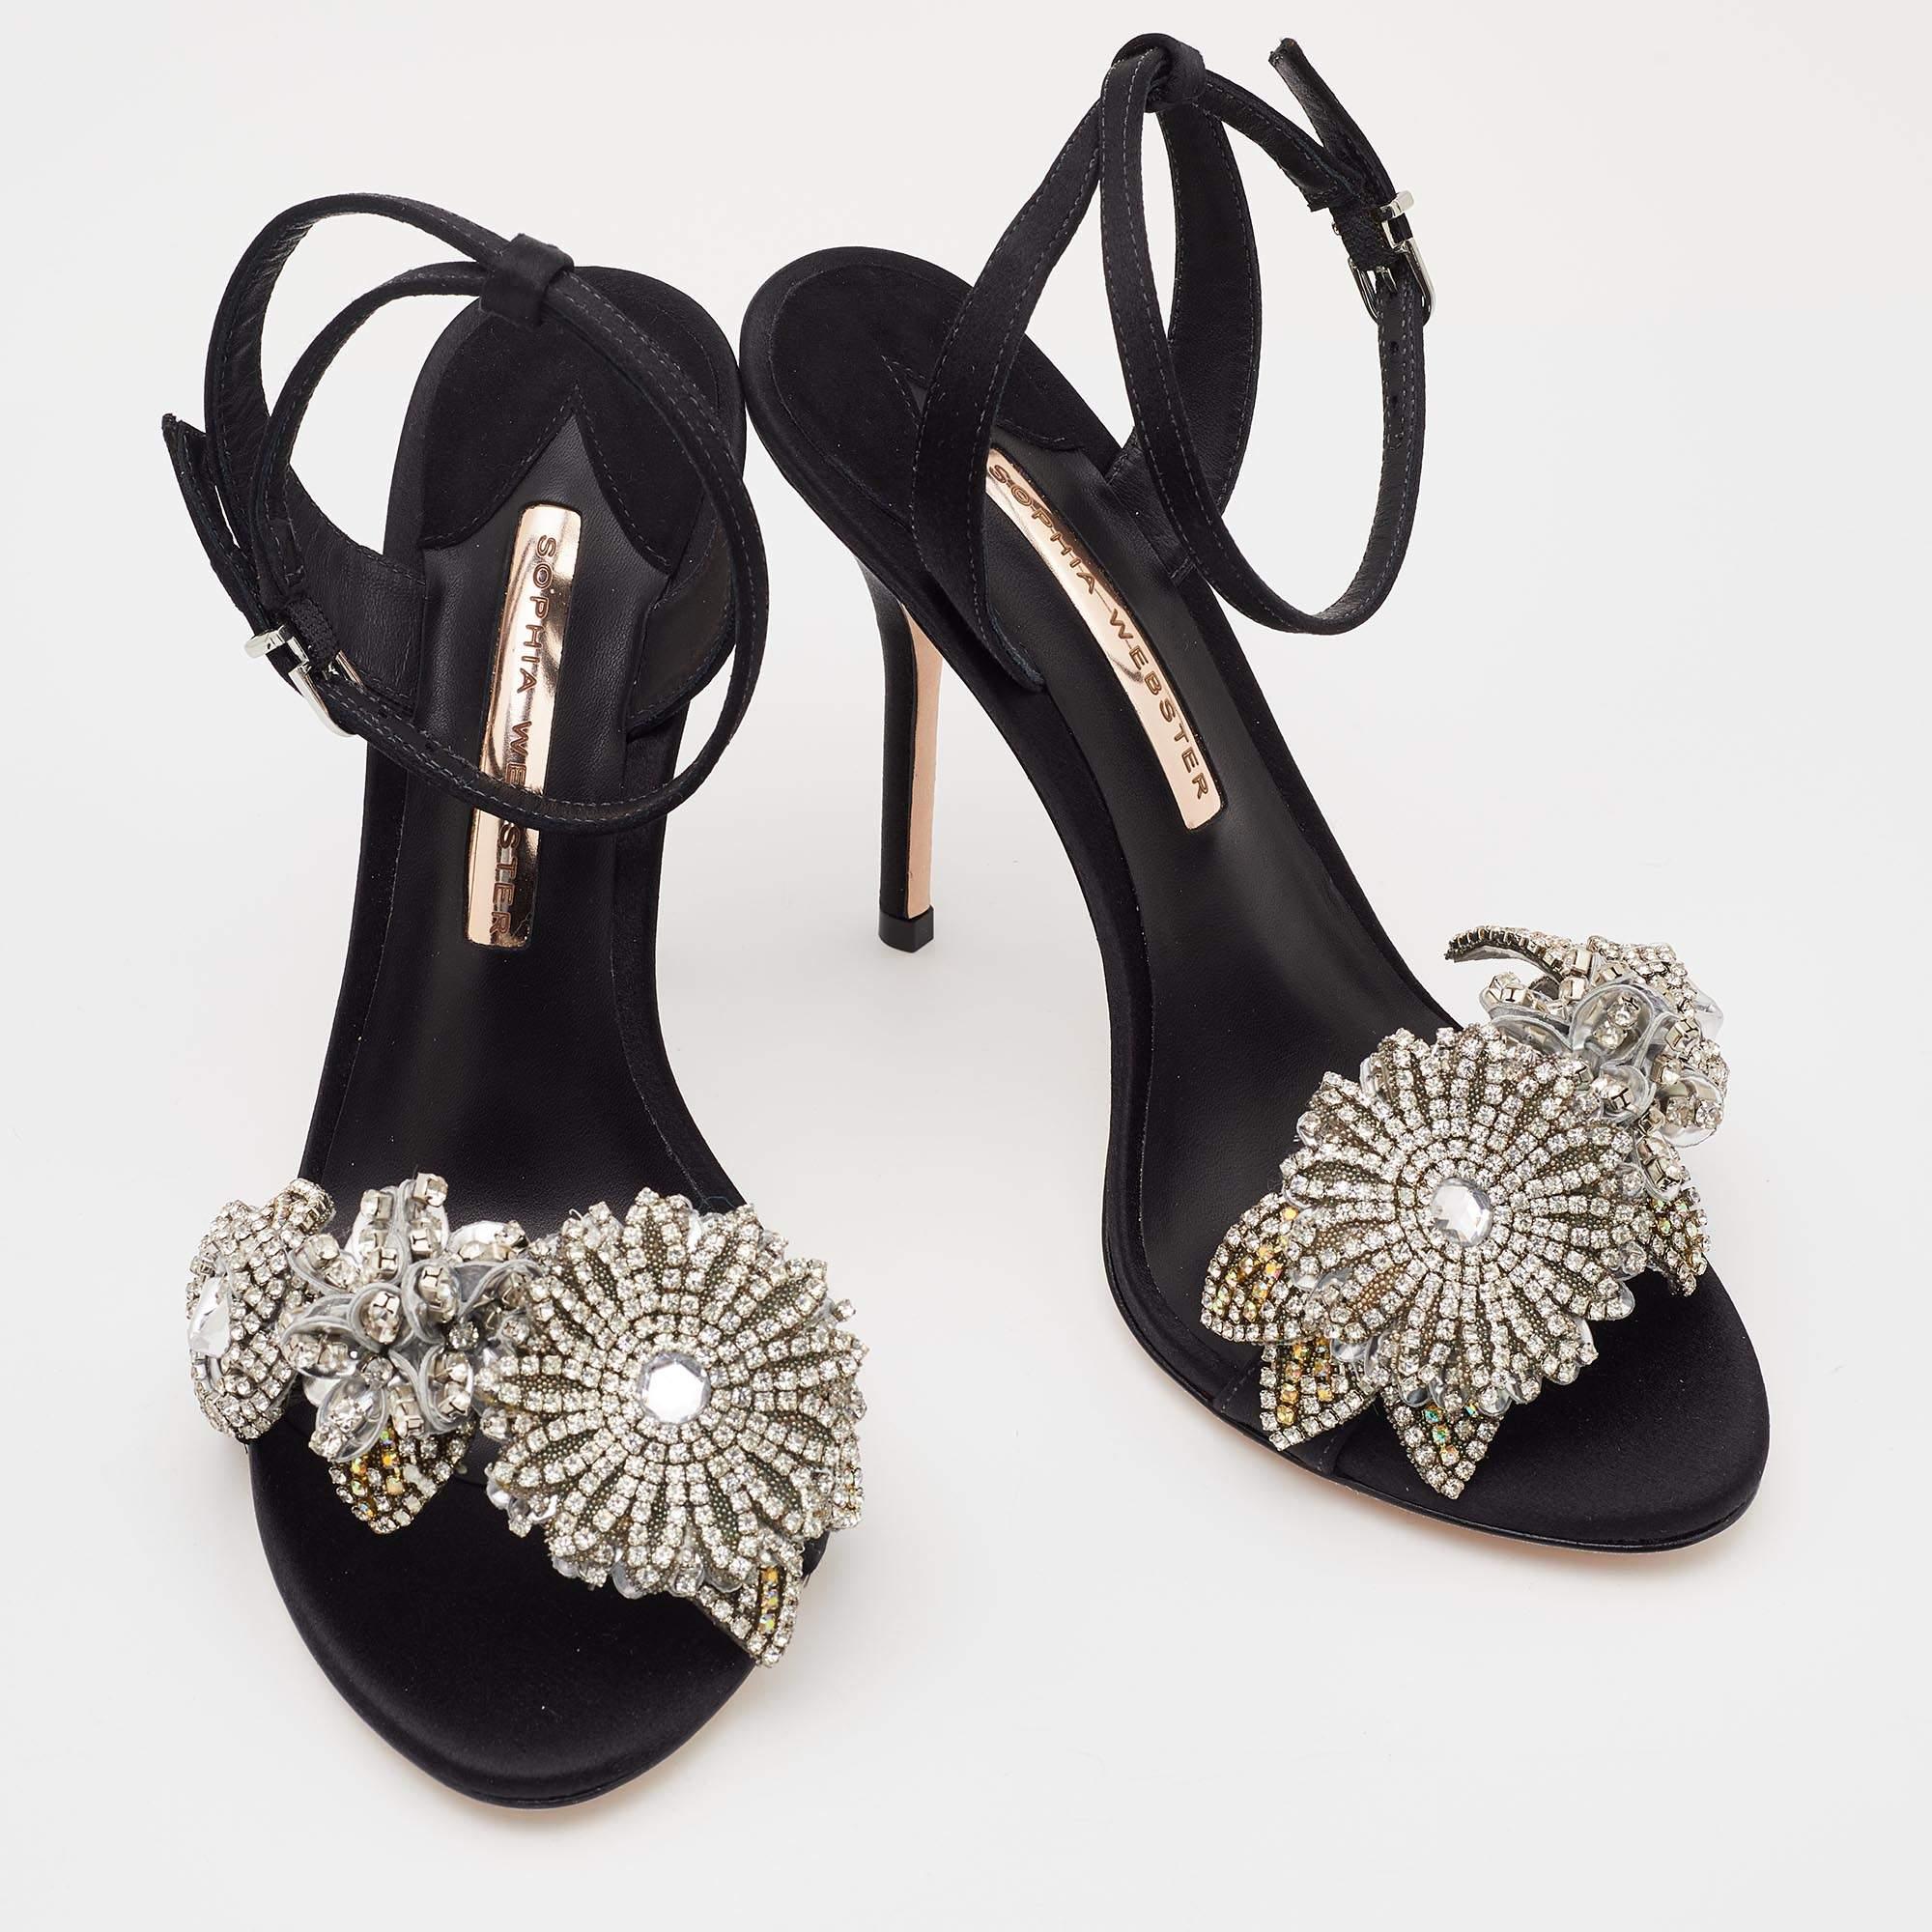 Sophia Webster Black Satin Lilico Floral Embellished Ankle Wrap Sandals Size 38 1